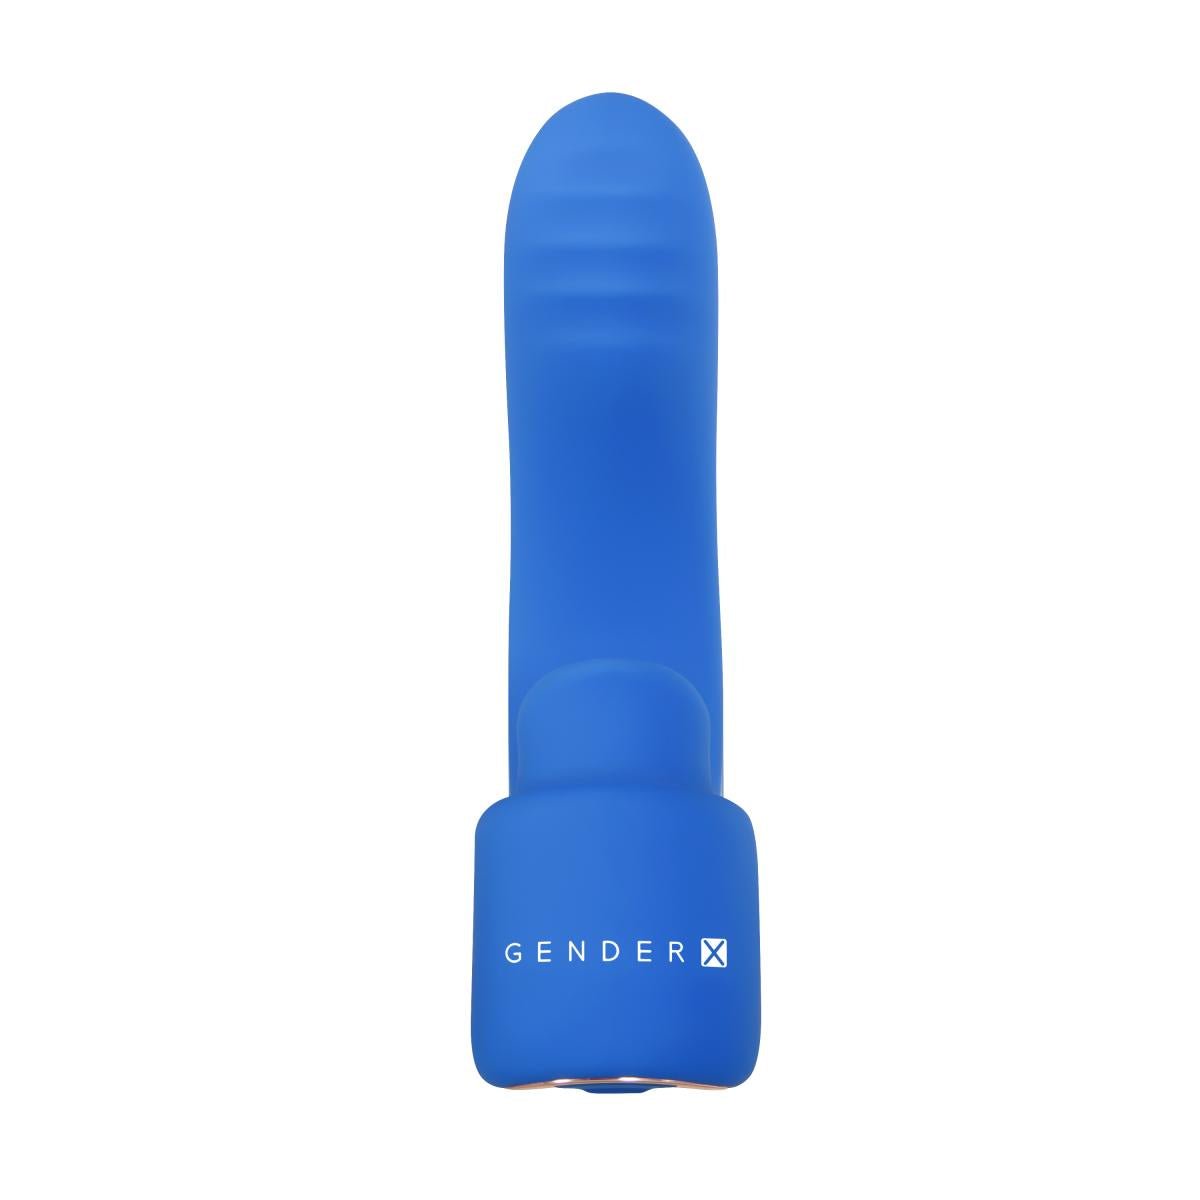 Gender X - Vinger Vibrator - Flick It | Evolved - Yonifyer